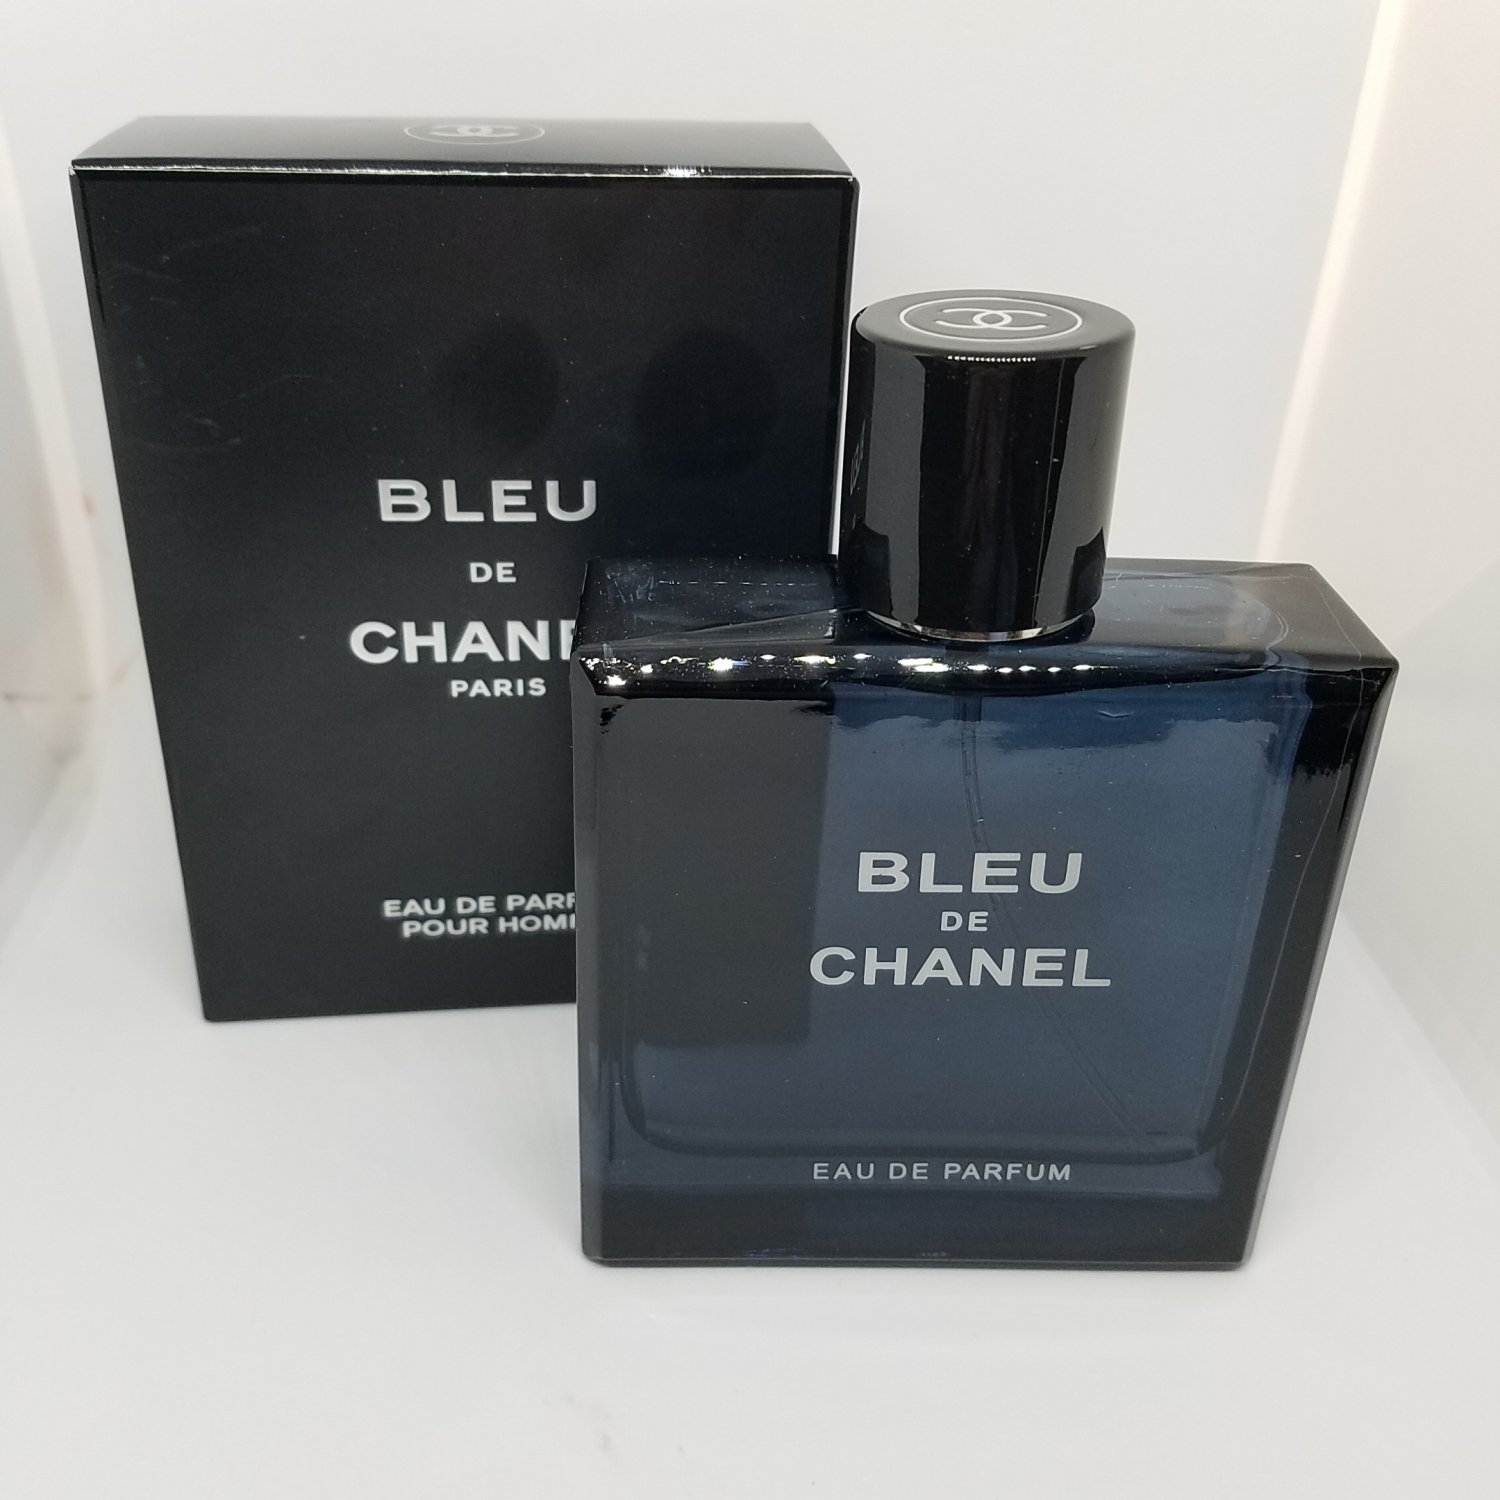 Chanel bleu мужские купить